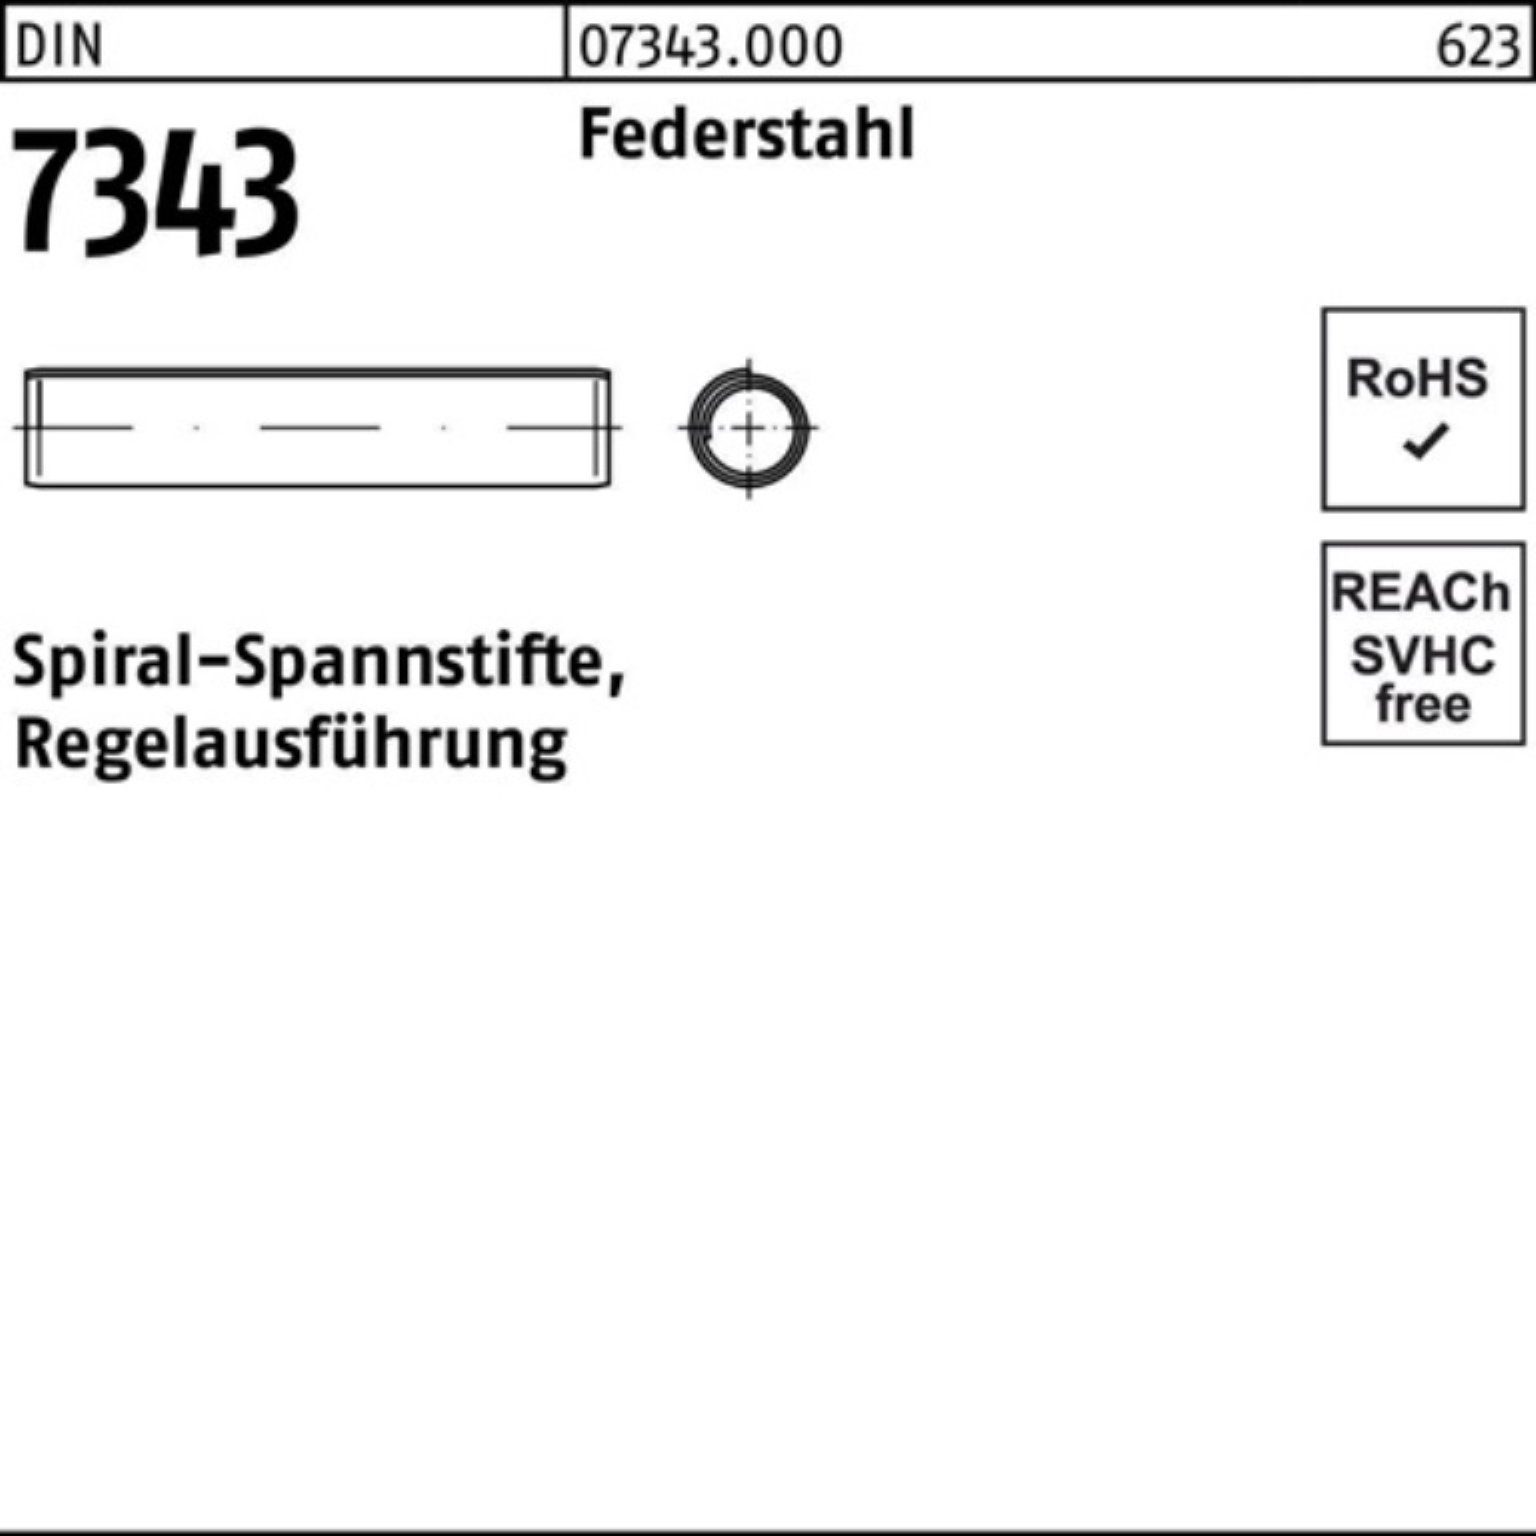 55 8750 Spiralspannstift 250er 7343/ISO Regela Reyher Spannstift DIN Pack 10x Federstahl